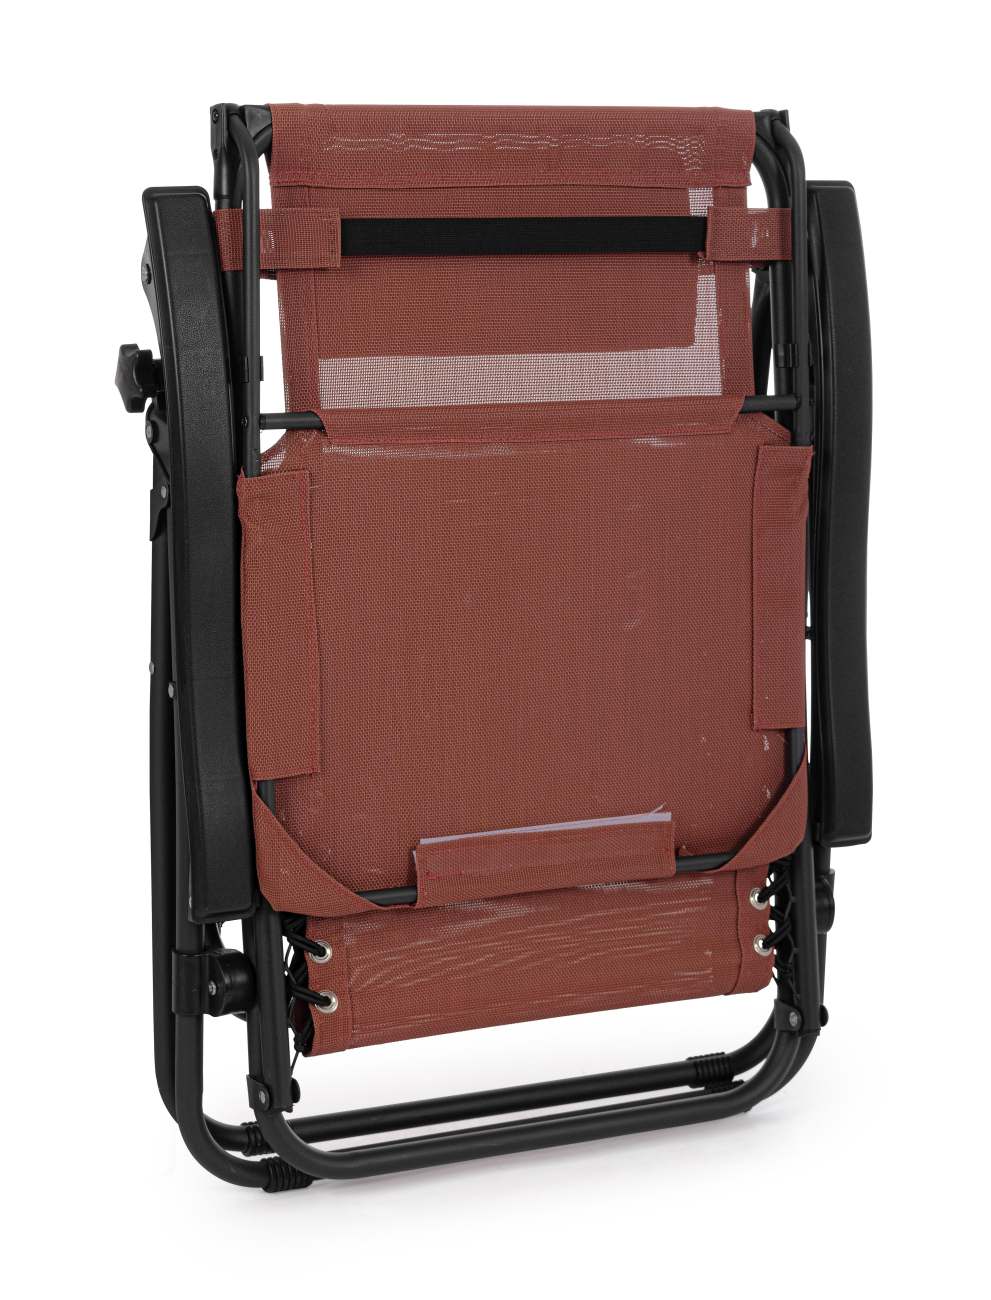 Der Loungesessel Wayne überzeugt mit seinem modernen Design. Gefertigt wurde er aus Textilene, welches einen roten Farbton besitzt. Das Gestell ist aus Metall und hat eine schwarze Farbe. Der Sessel ist klappbar und besitzt ein Dach